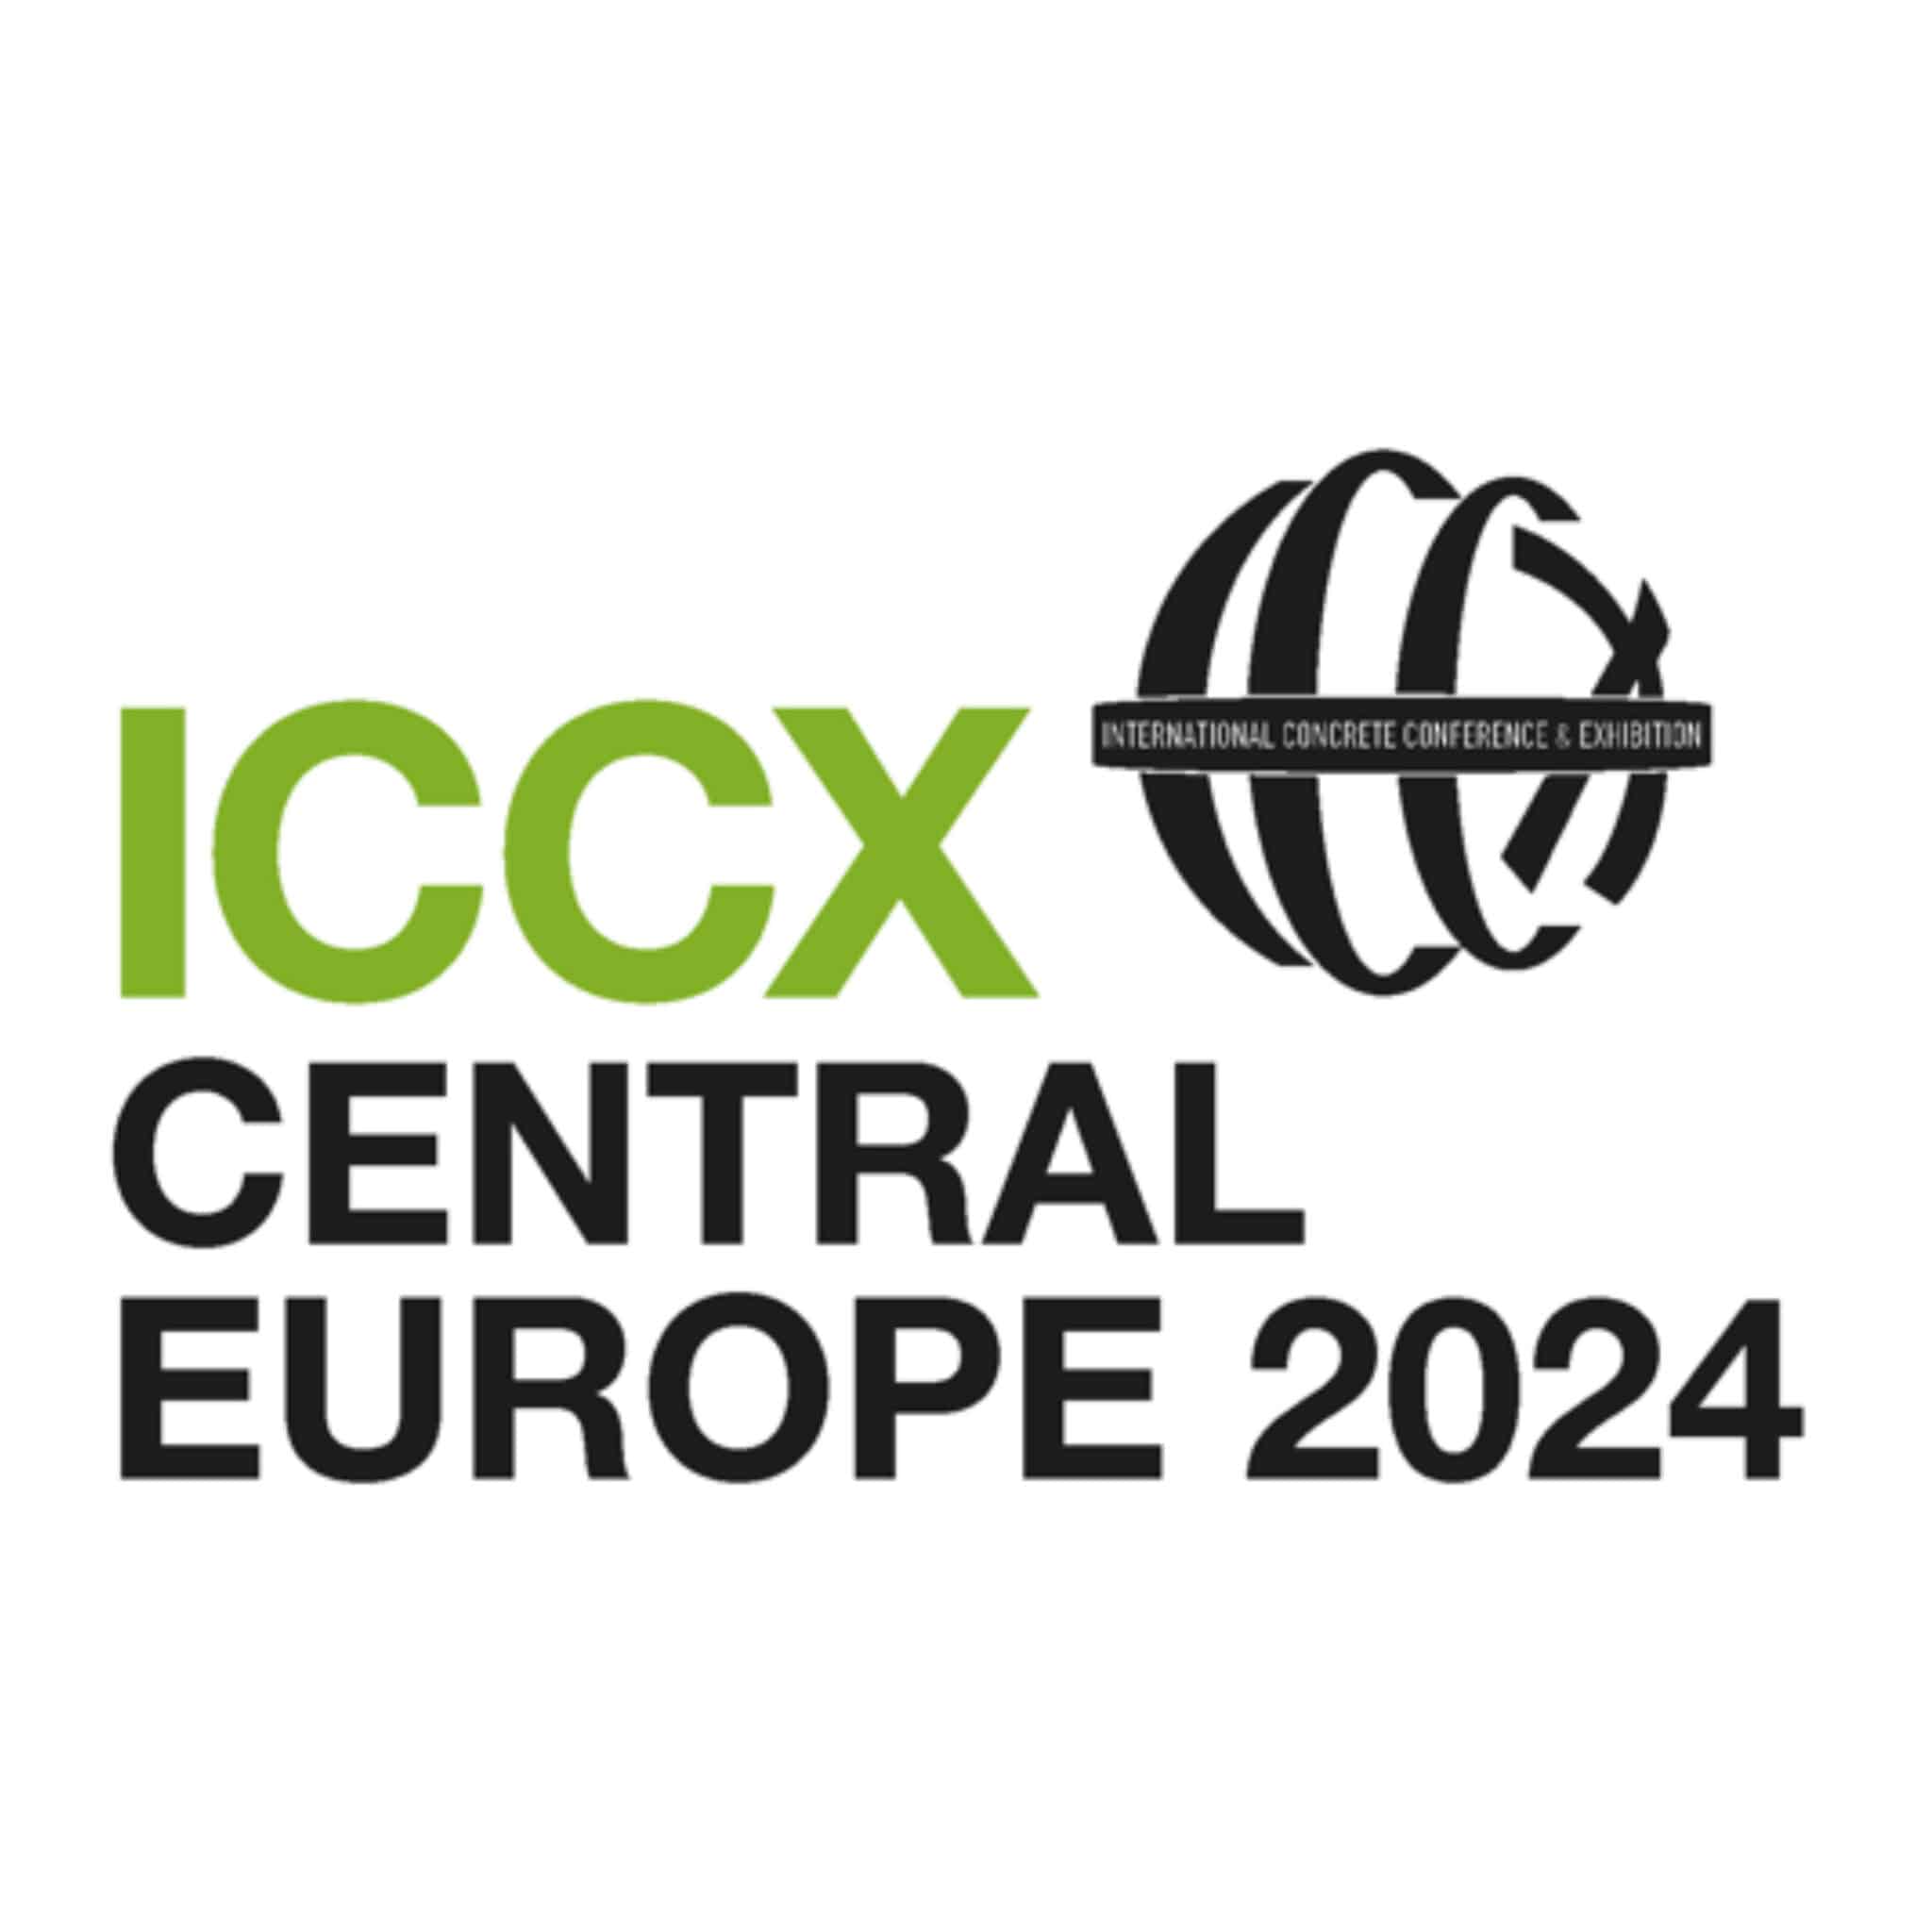 ICCX_CE